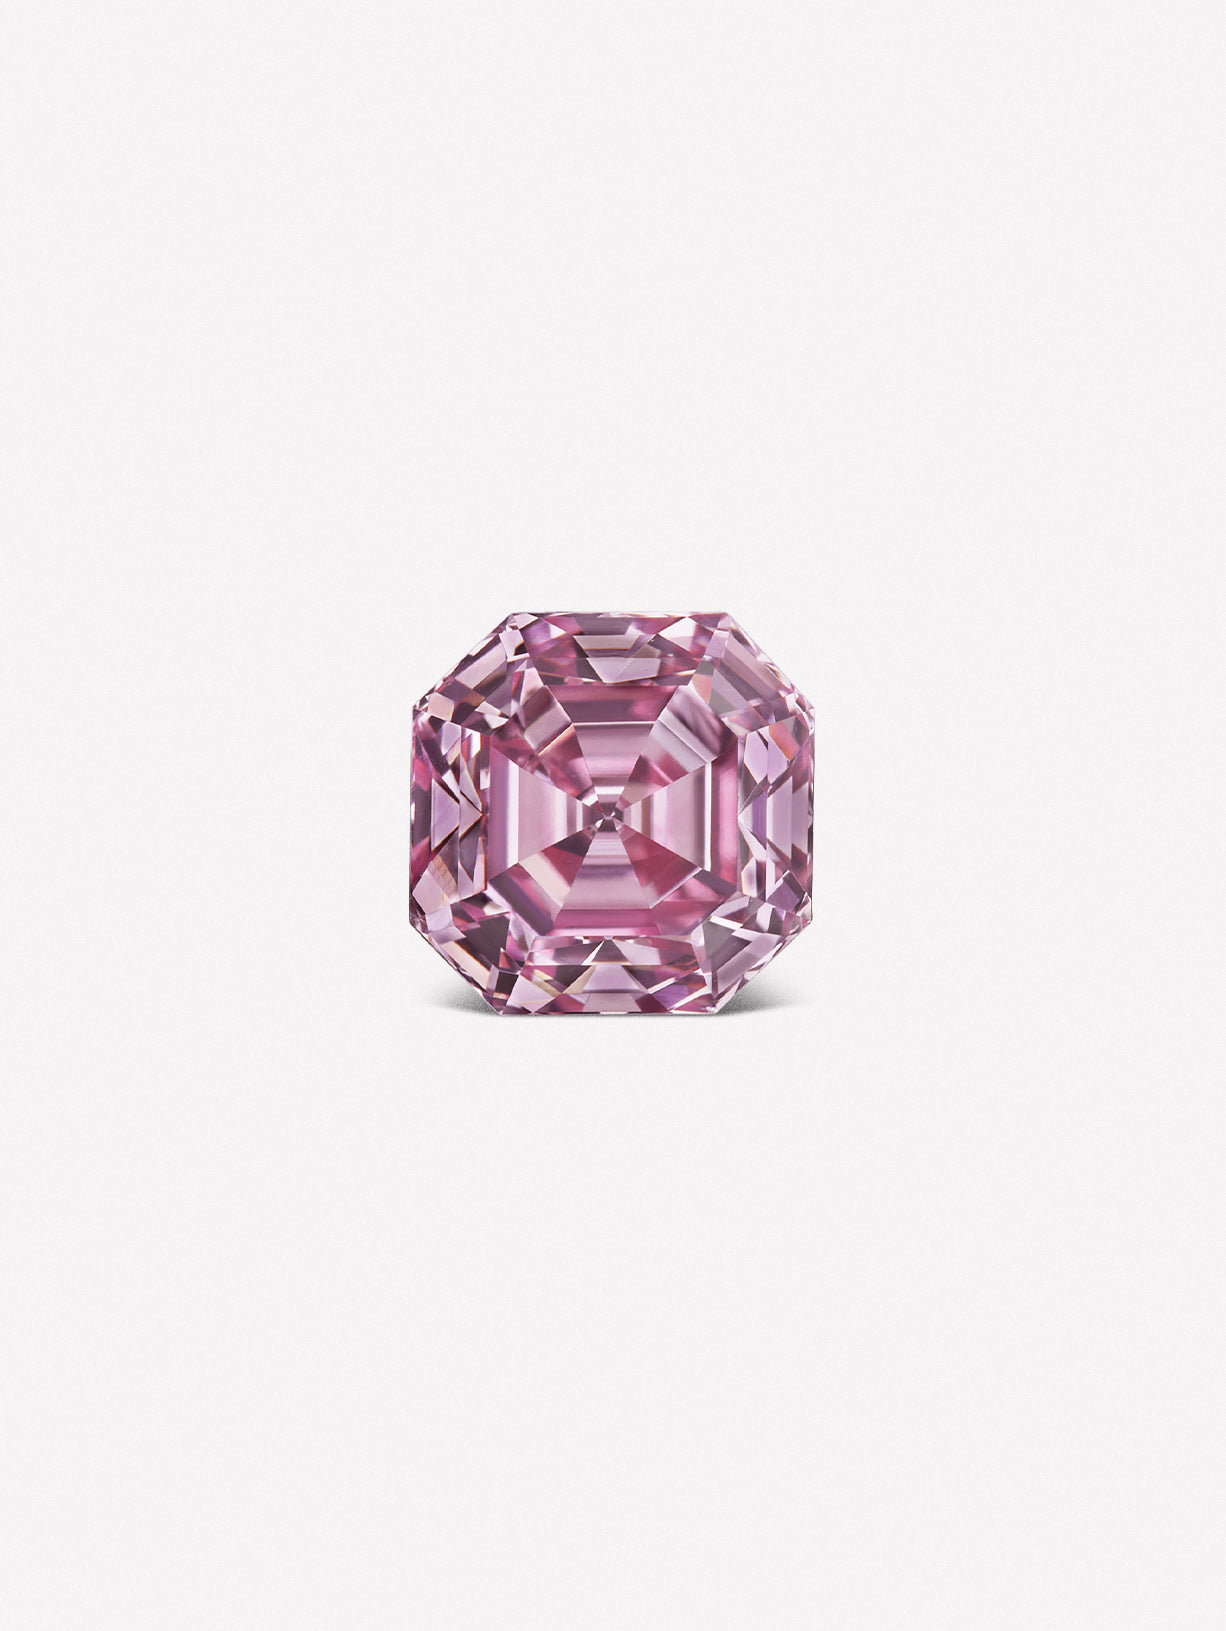 Asscher Cut Argyle Pink™ Diamond - Pink Diamonds, J FINE - J Fine, Pink Diamond - Pink Diamond Jewelry, asscher-cut-pink-diamond - Argyle Pink Diamonds